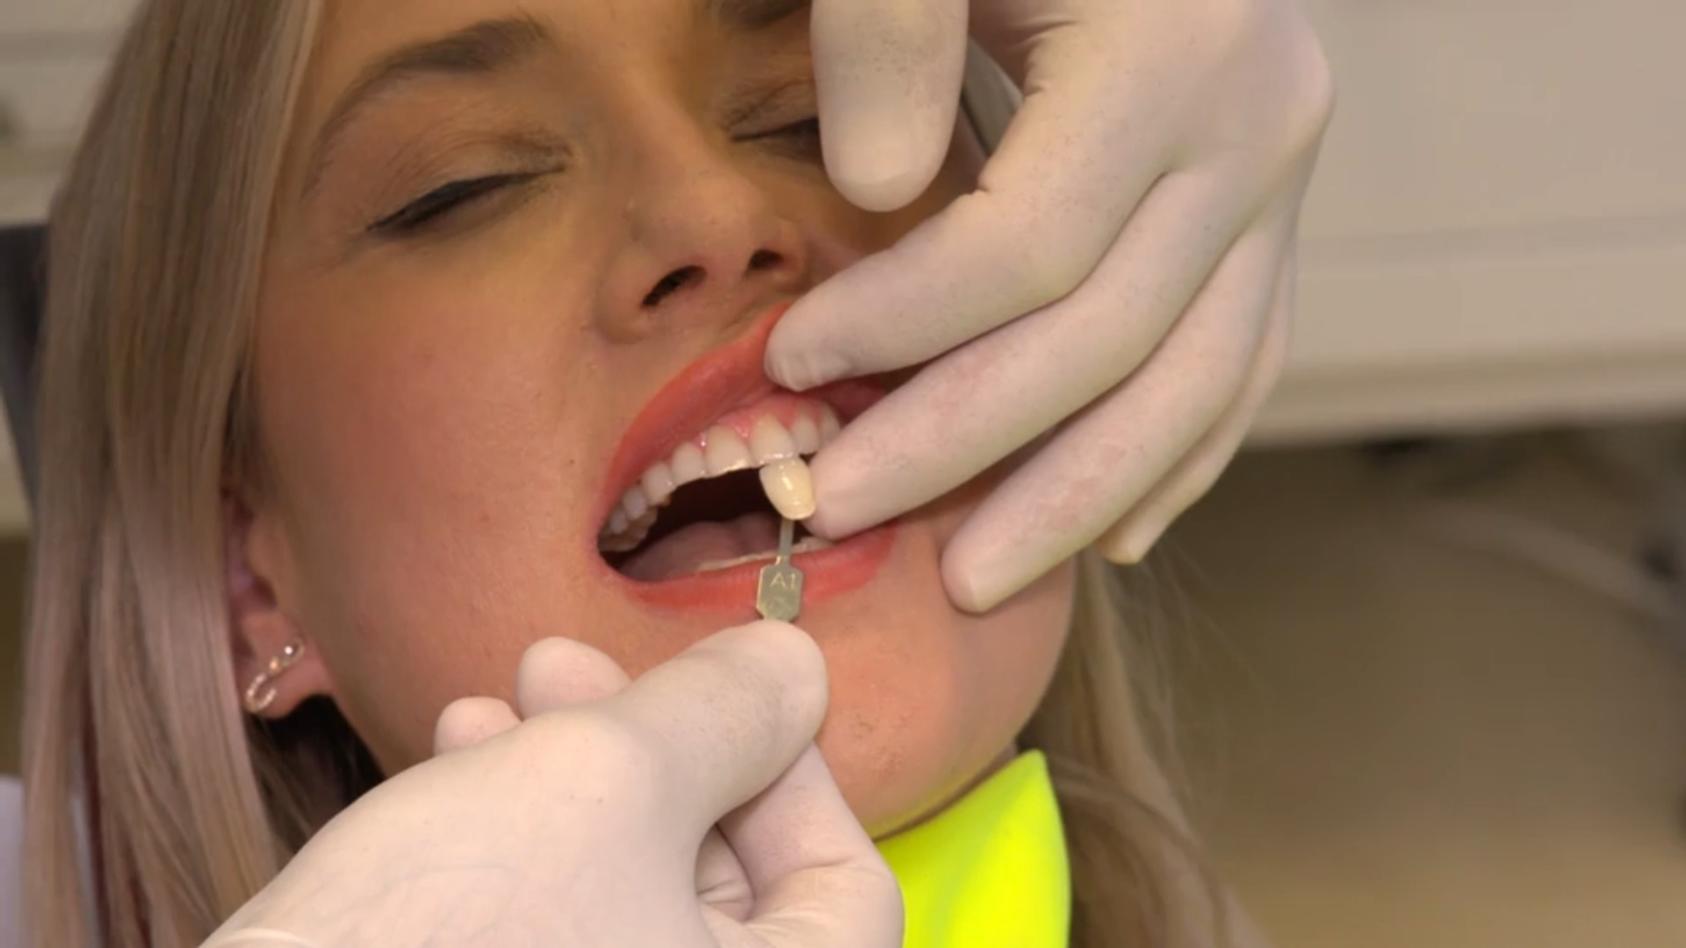 Weißere Zähne dank lila Zahnpasta? Wir machen den Test